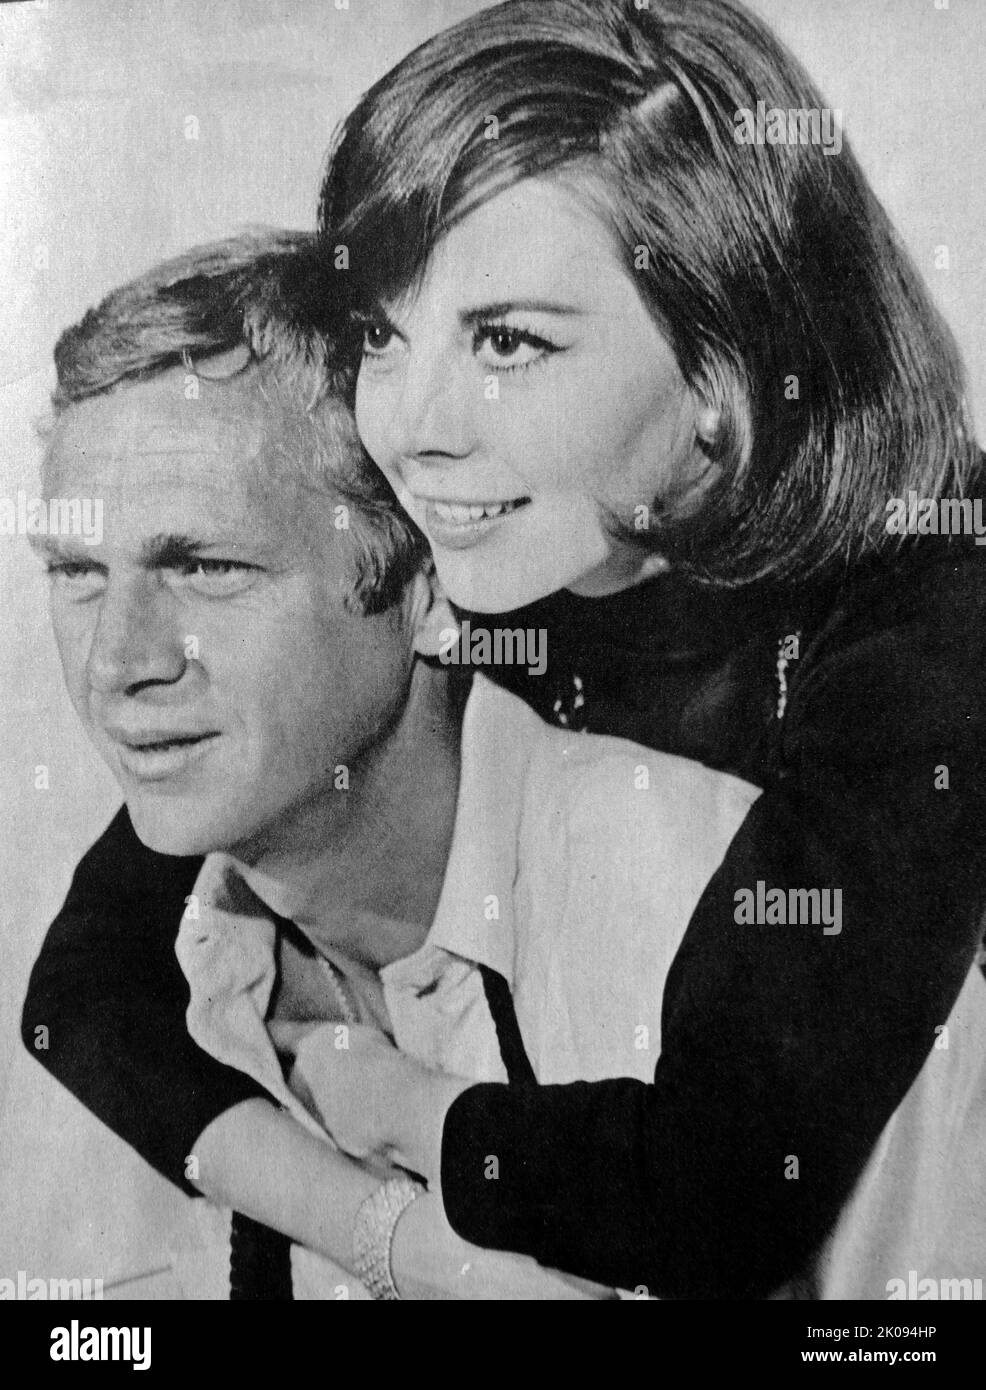 Zeitungsausschnitte und Fotos von Natalie Wood und Steve McQueen im Film Love With The Proper Stranger von 1963, einem amerikanischen romantischen Komödie-Drama-Film. Stockfoto